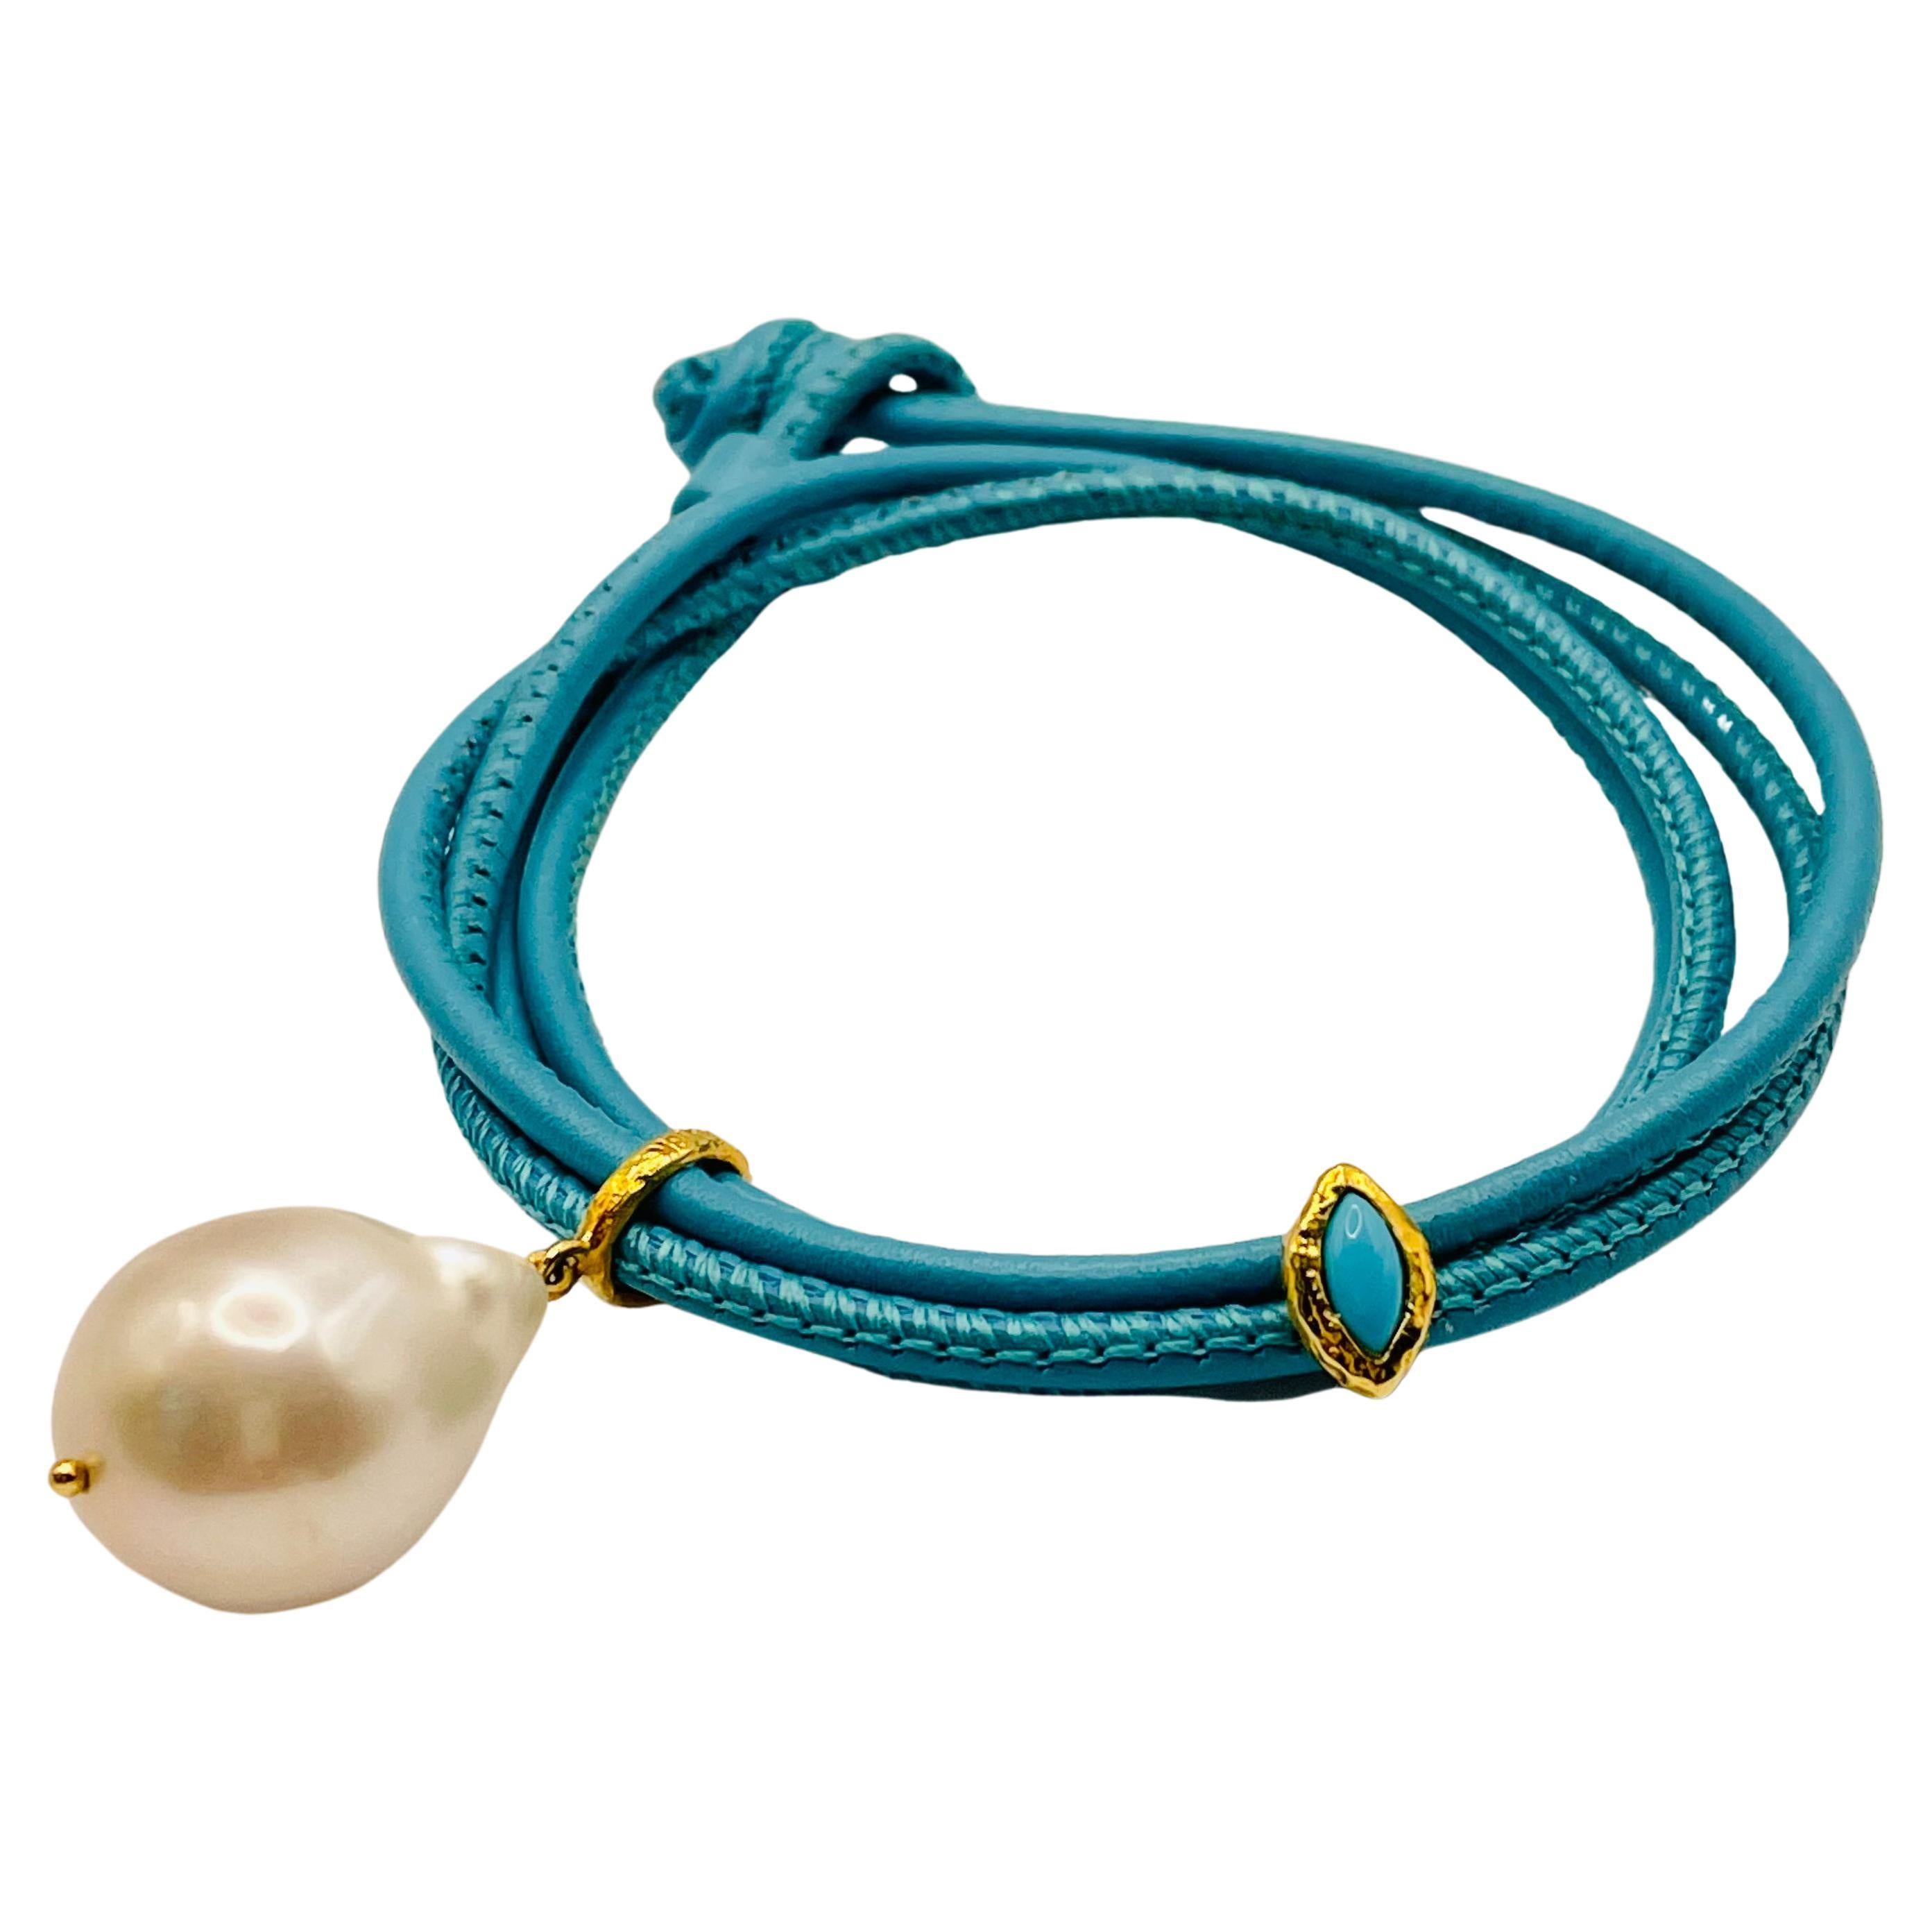 White Pearl and Turquoise Evil Eye Bracelet by Julia Shlovsky